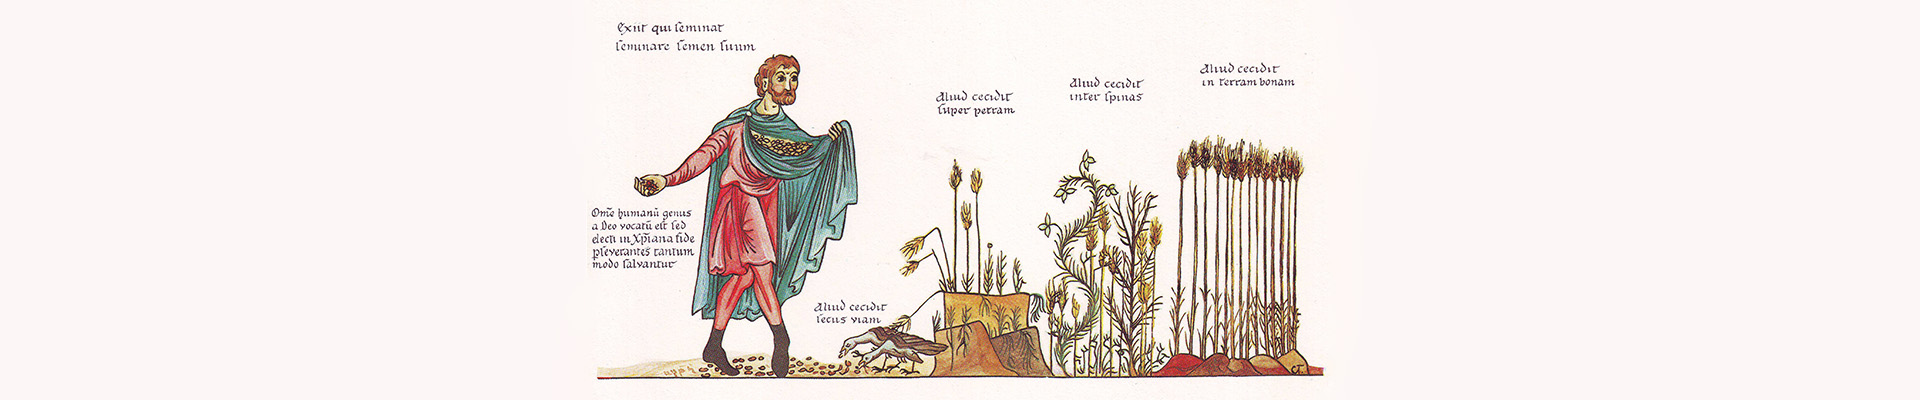 Mittelalterliche Zeichnung von einem Mann in einem roten Umhang der Getreide säht.